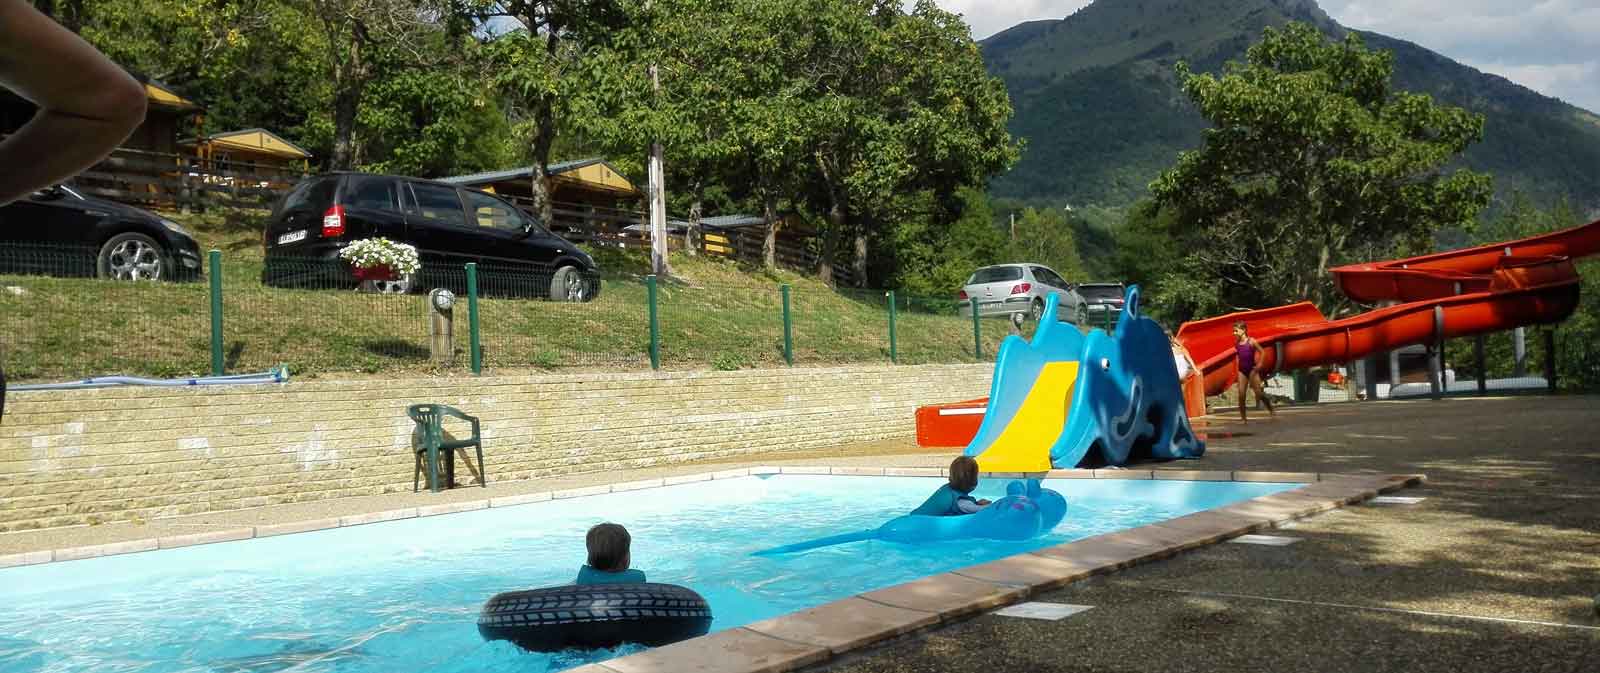 piscine toboggan aquatique camping isere